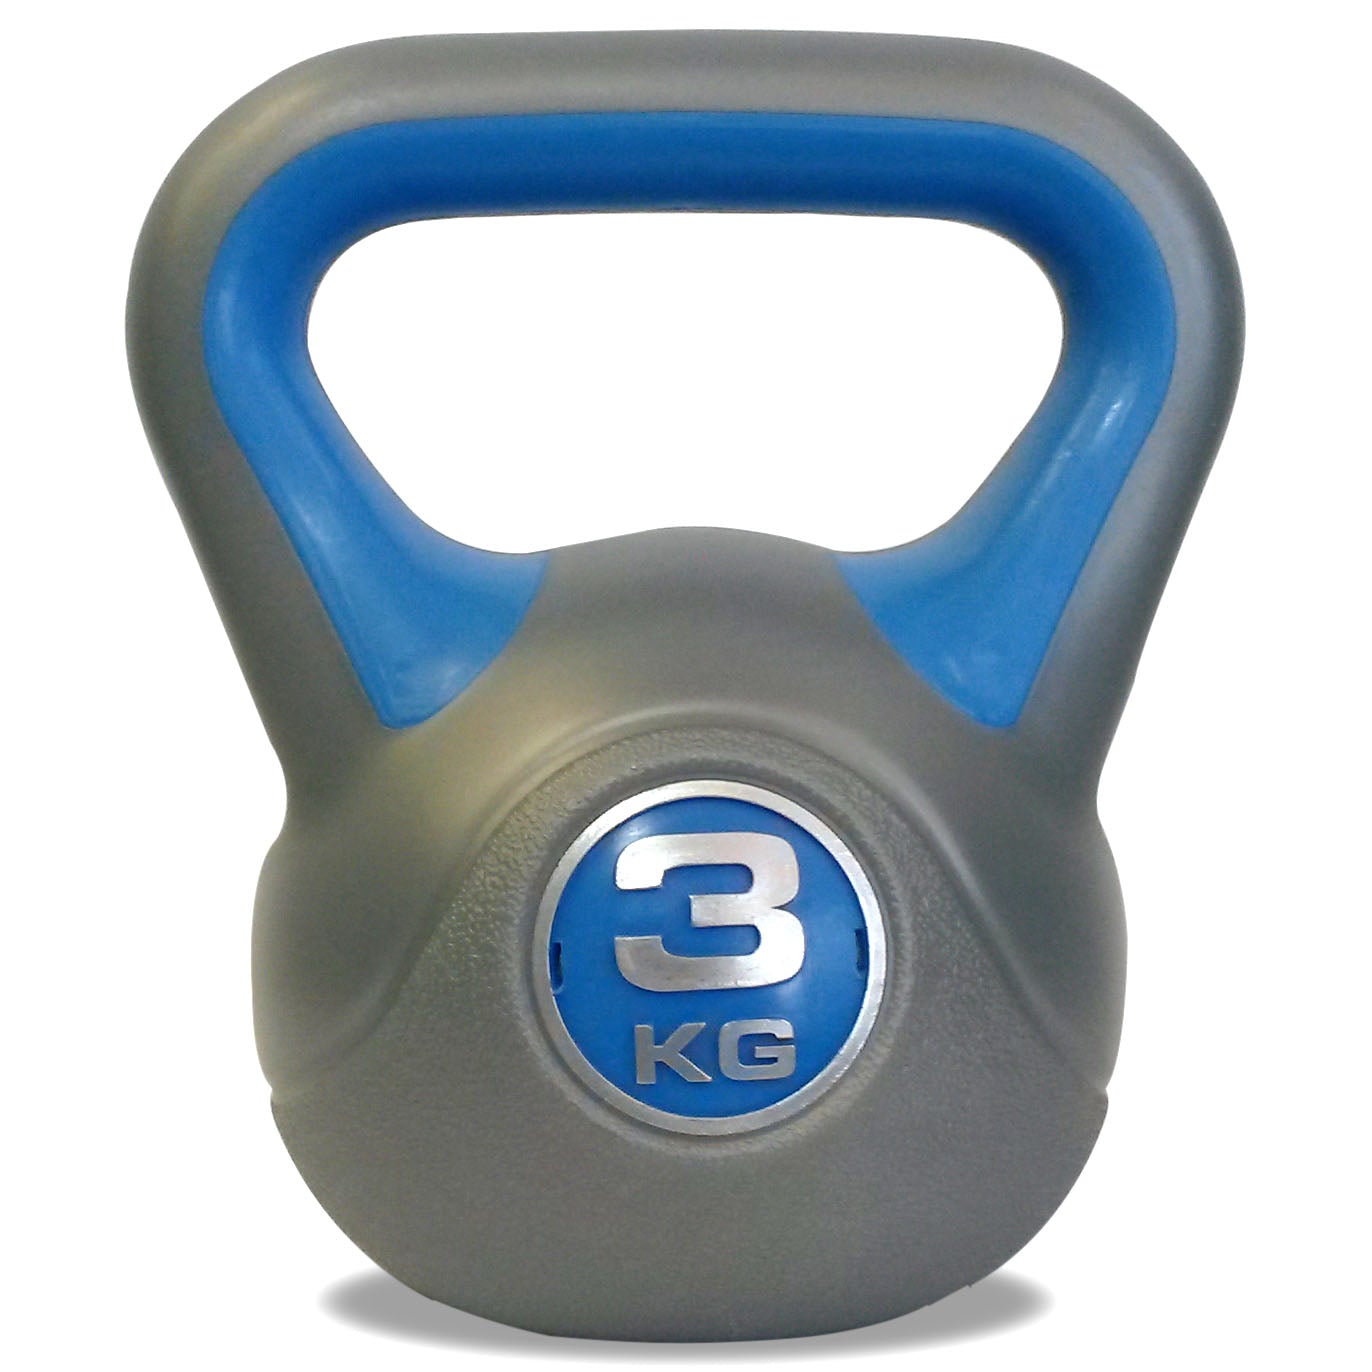 DKN 2, 3 and 4kg Vinyl Kettlebell Weight Set – Sweatband